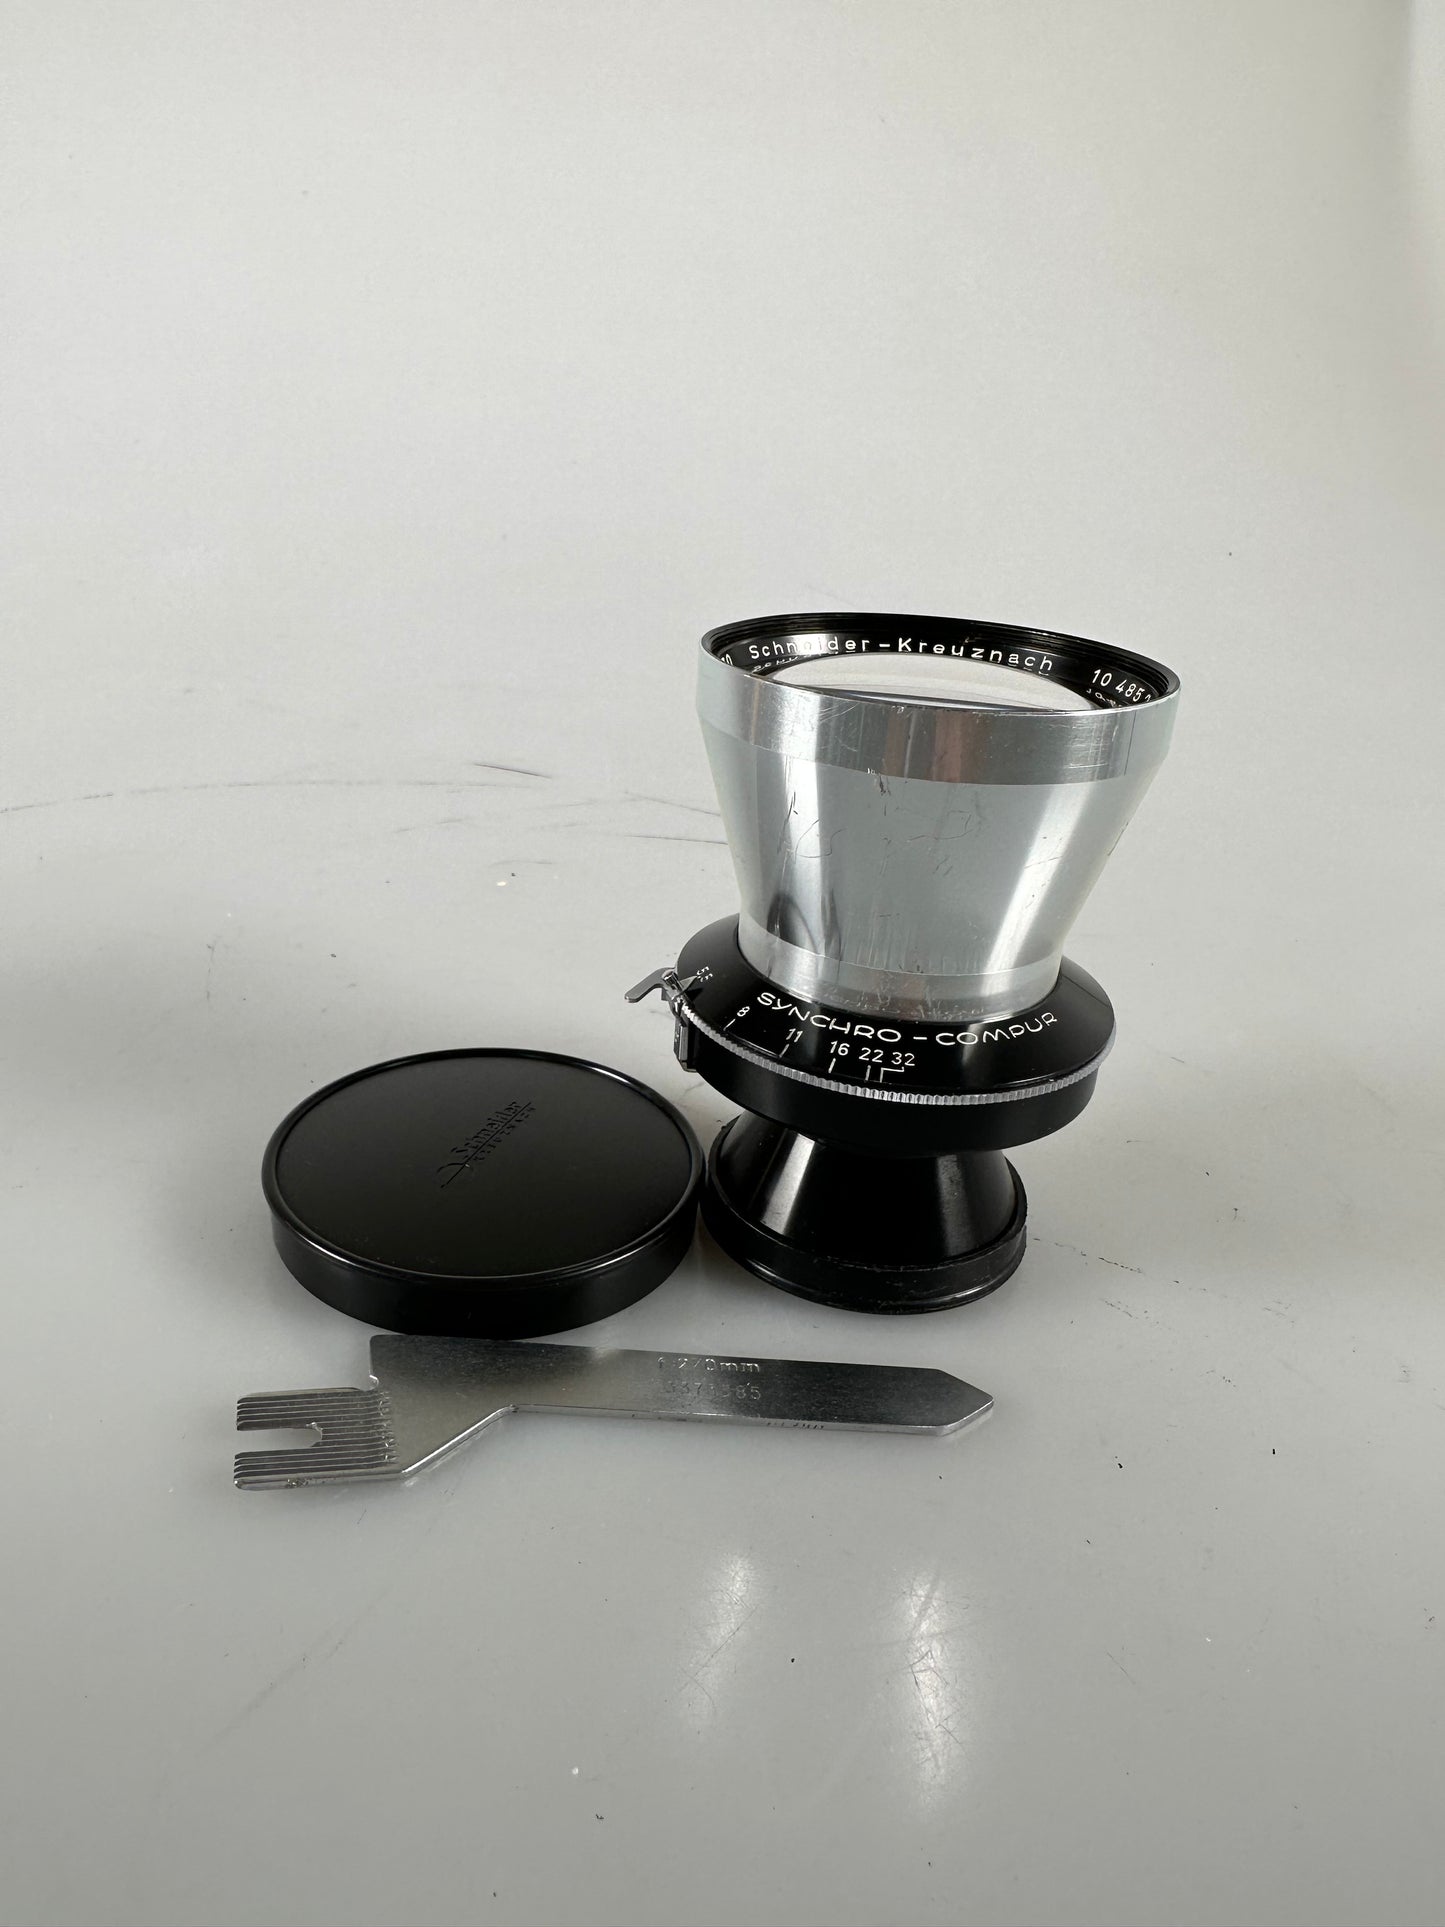 Linhof Schneider Kreuznach 270mm f5.5 lens (Linhof Technika Select) with cam